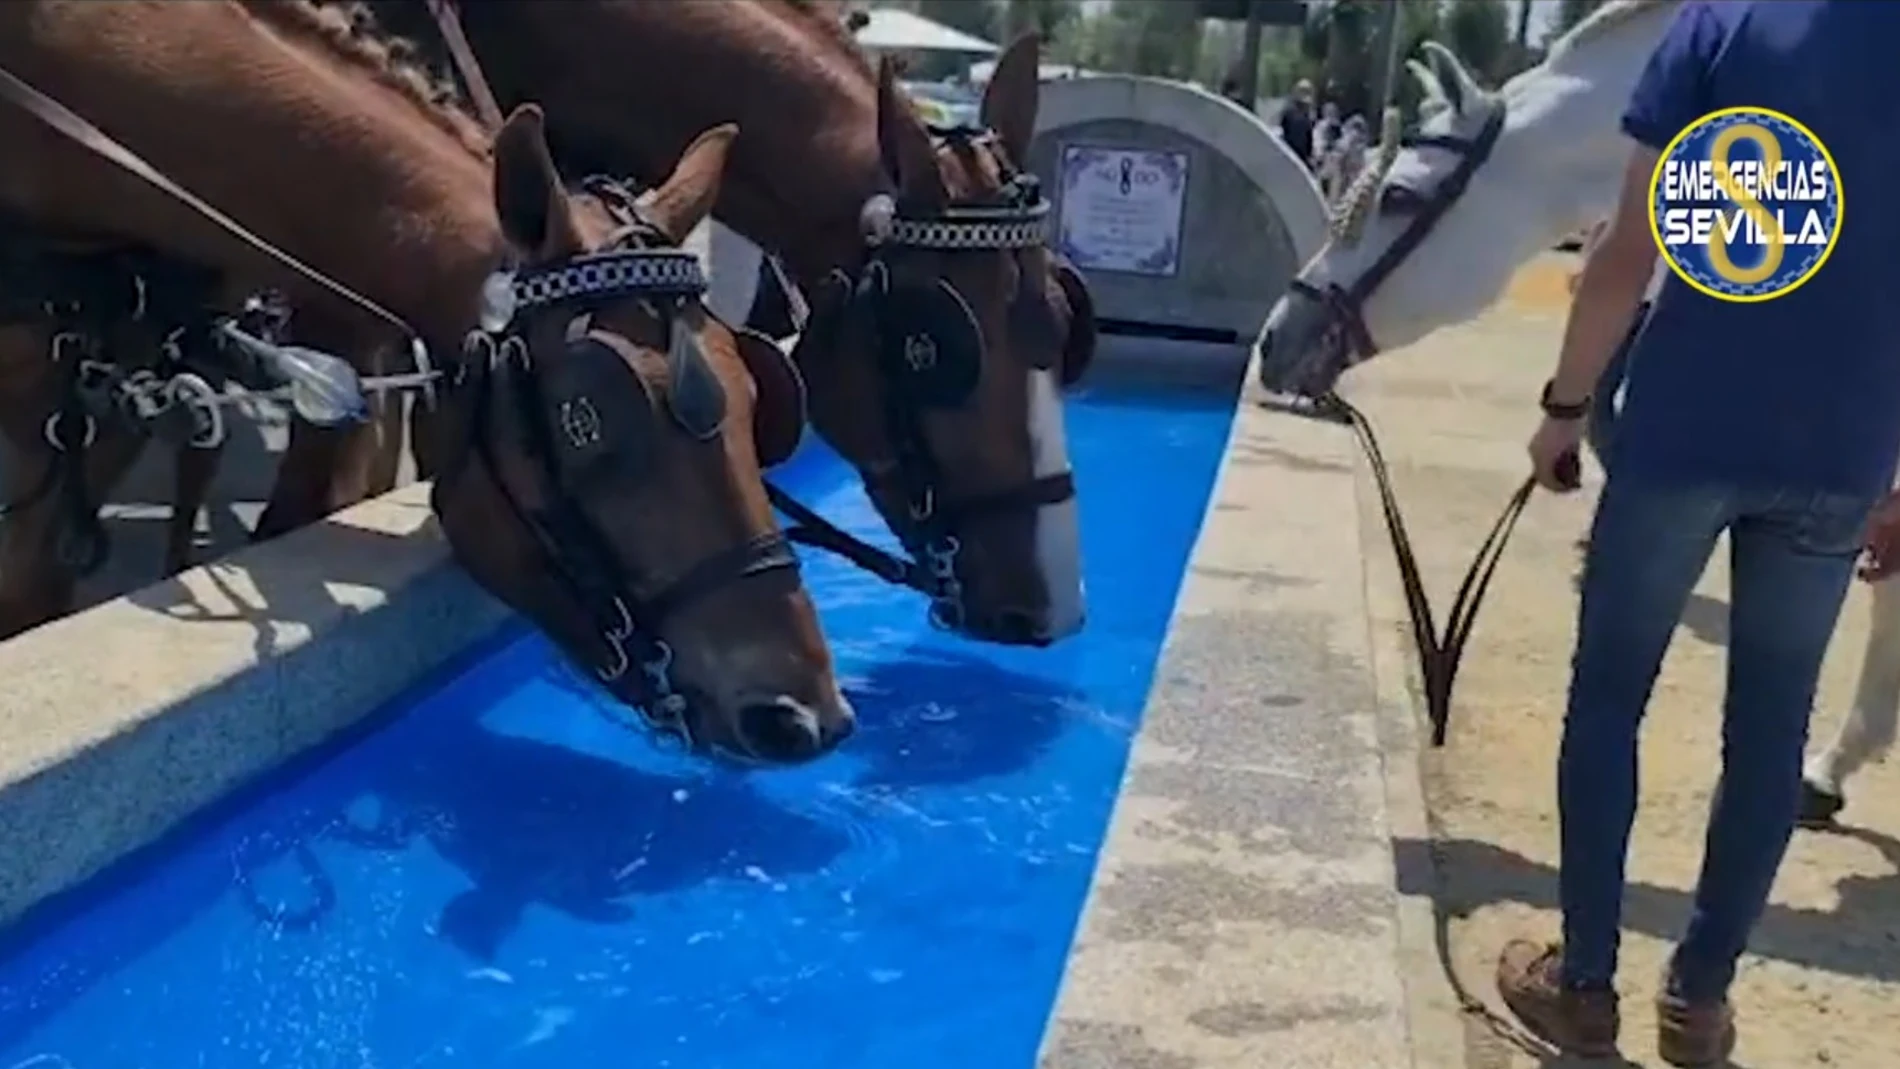 Emergencias Sevilla recuerda que los caballos necesitan &quot;descanso y beber agua&quot; tras la muerte de un animal en la Feria de Abril